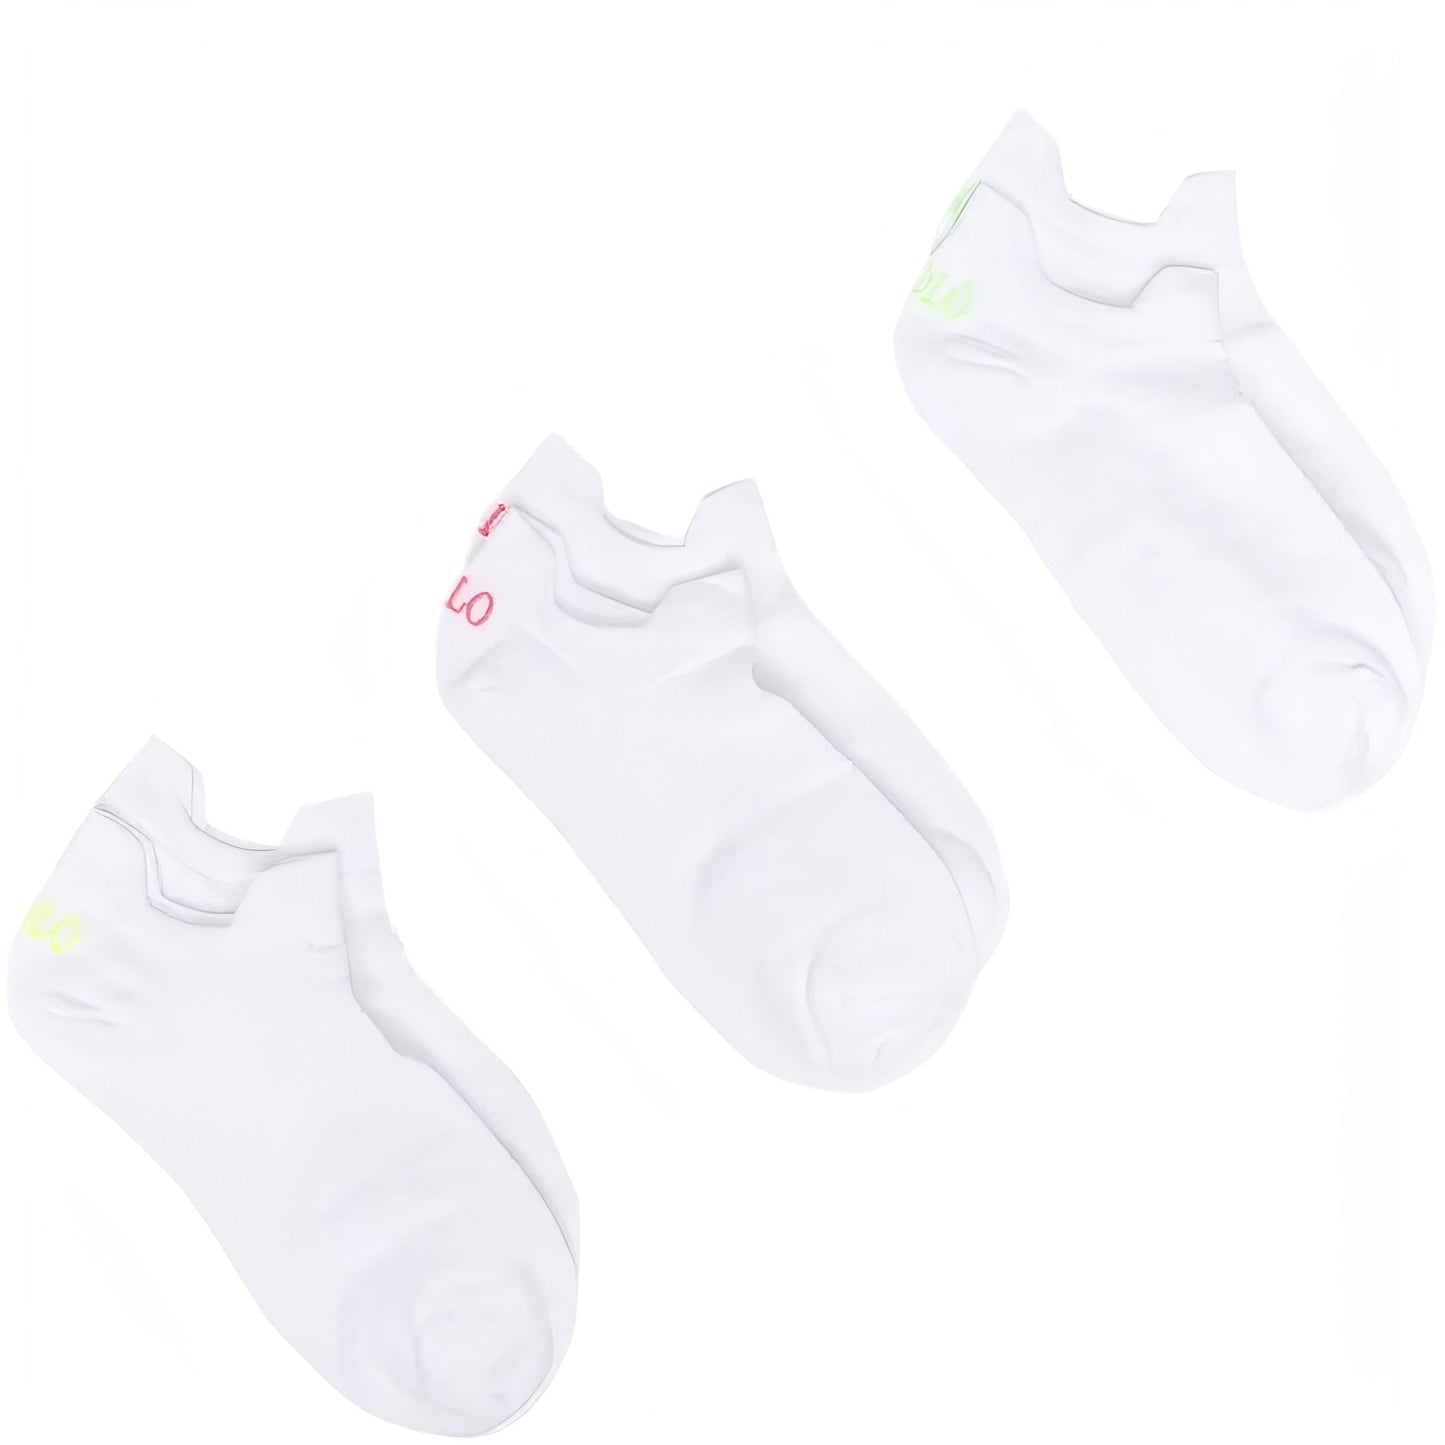 POLO RALPH LAUREN moteriškos baltos kojinės Double tab 3-pack socks